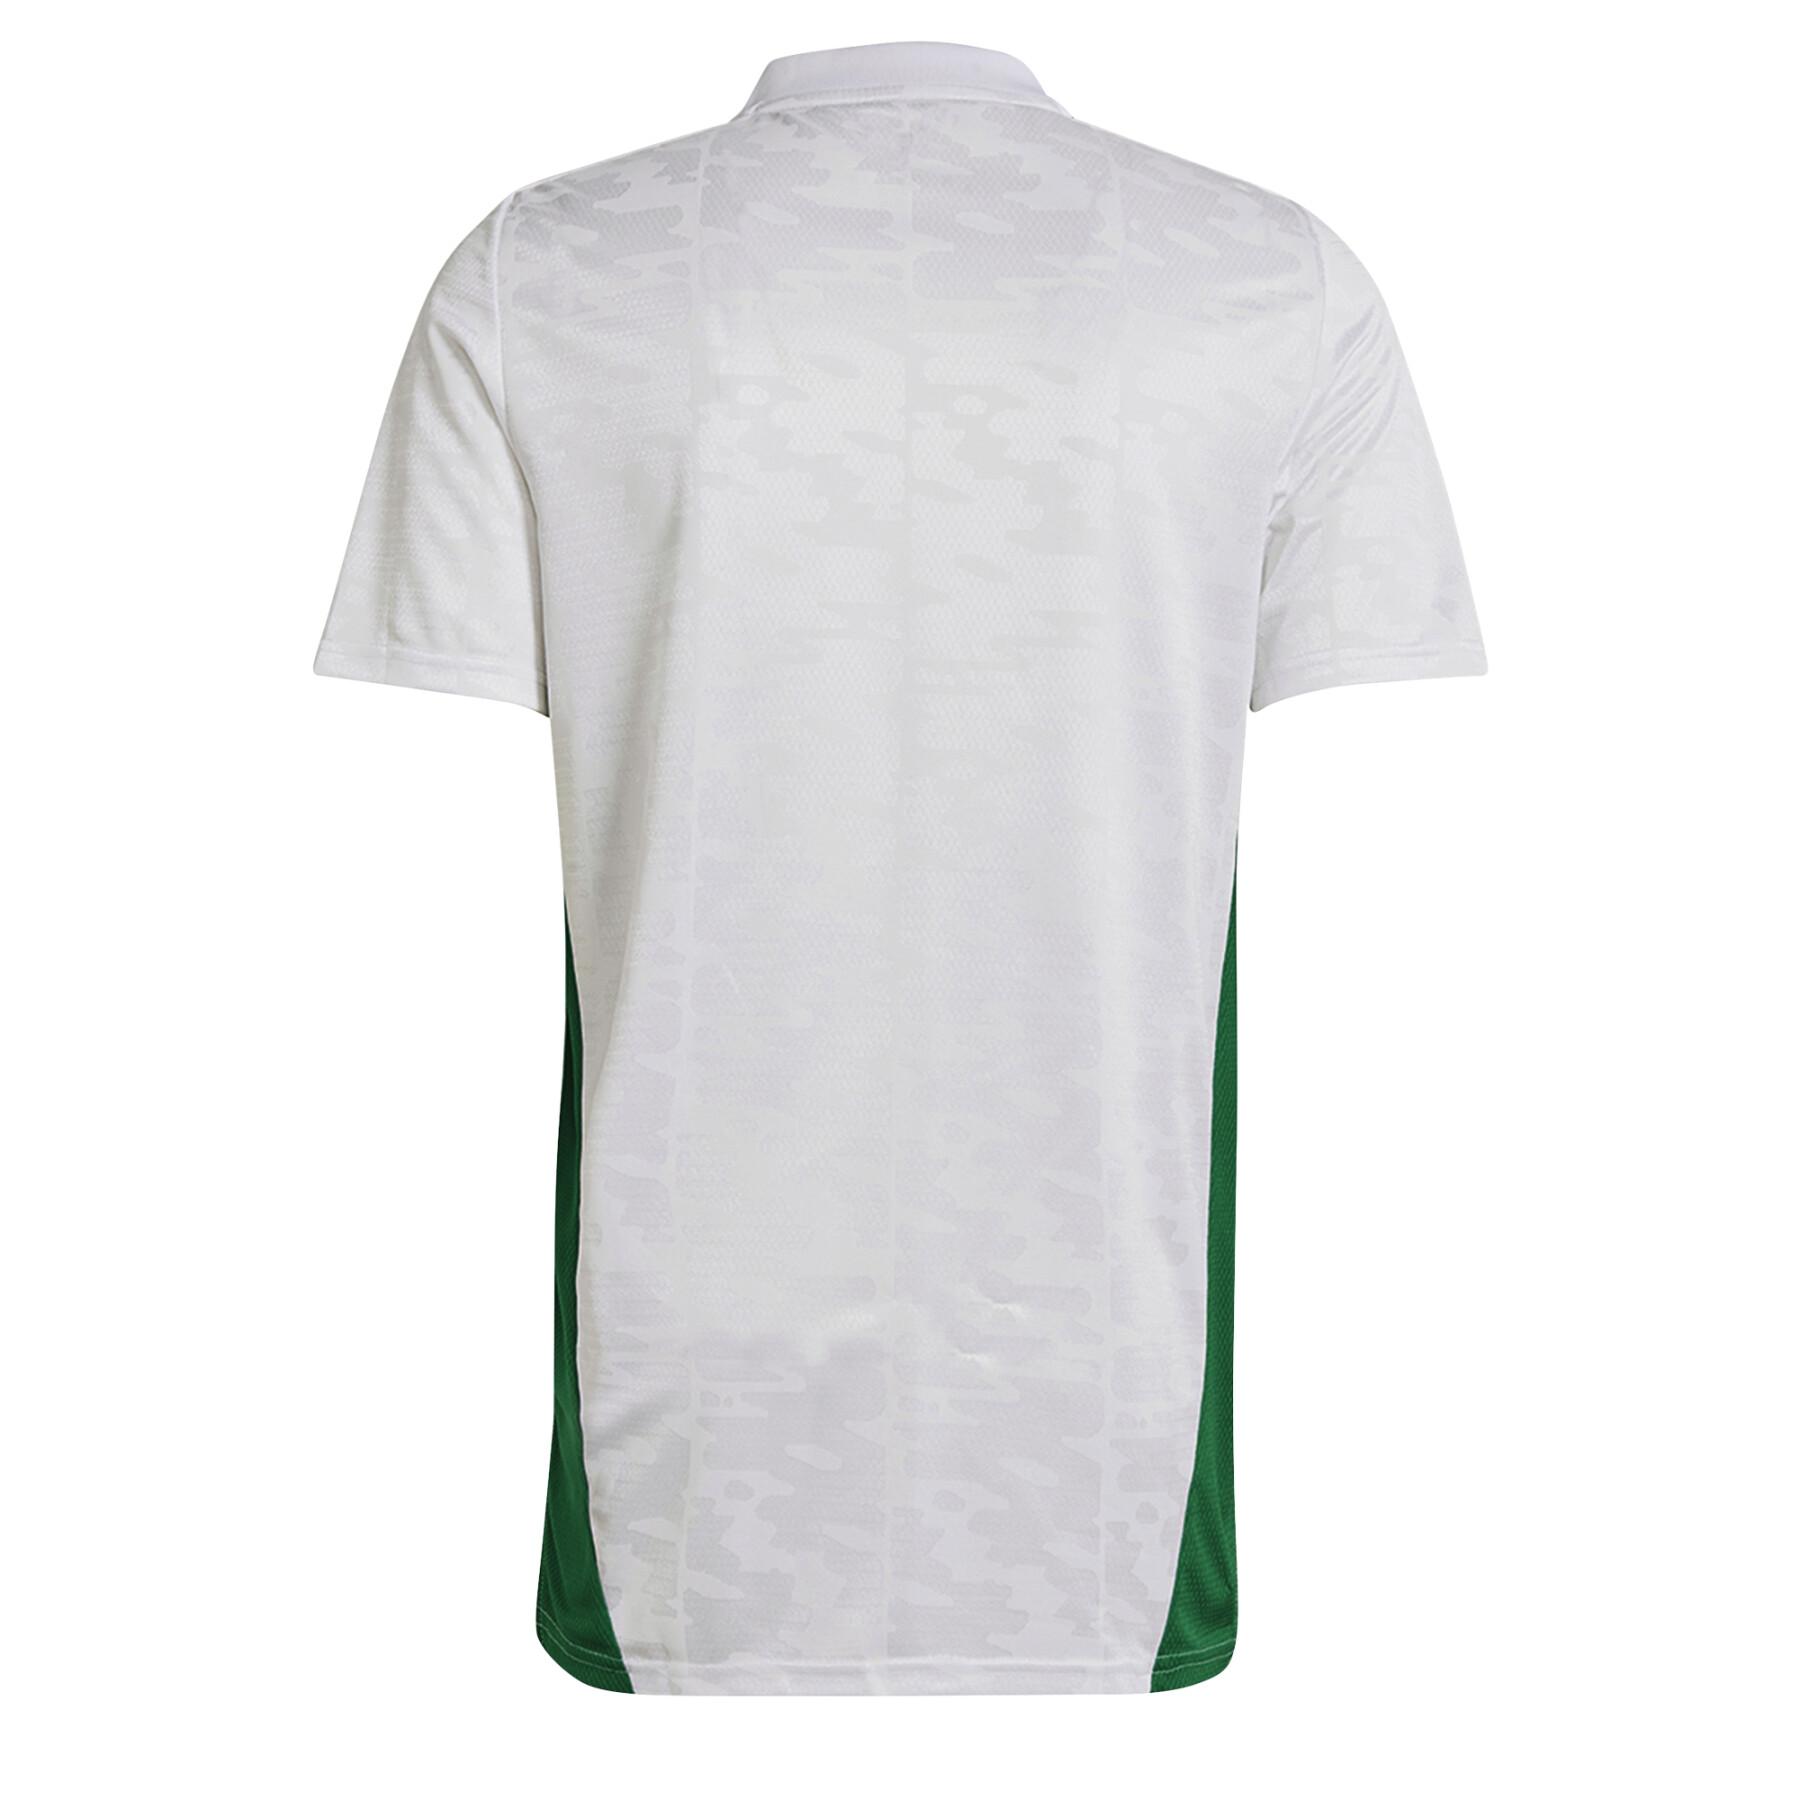 Home jersey Algérie 2020/21